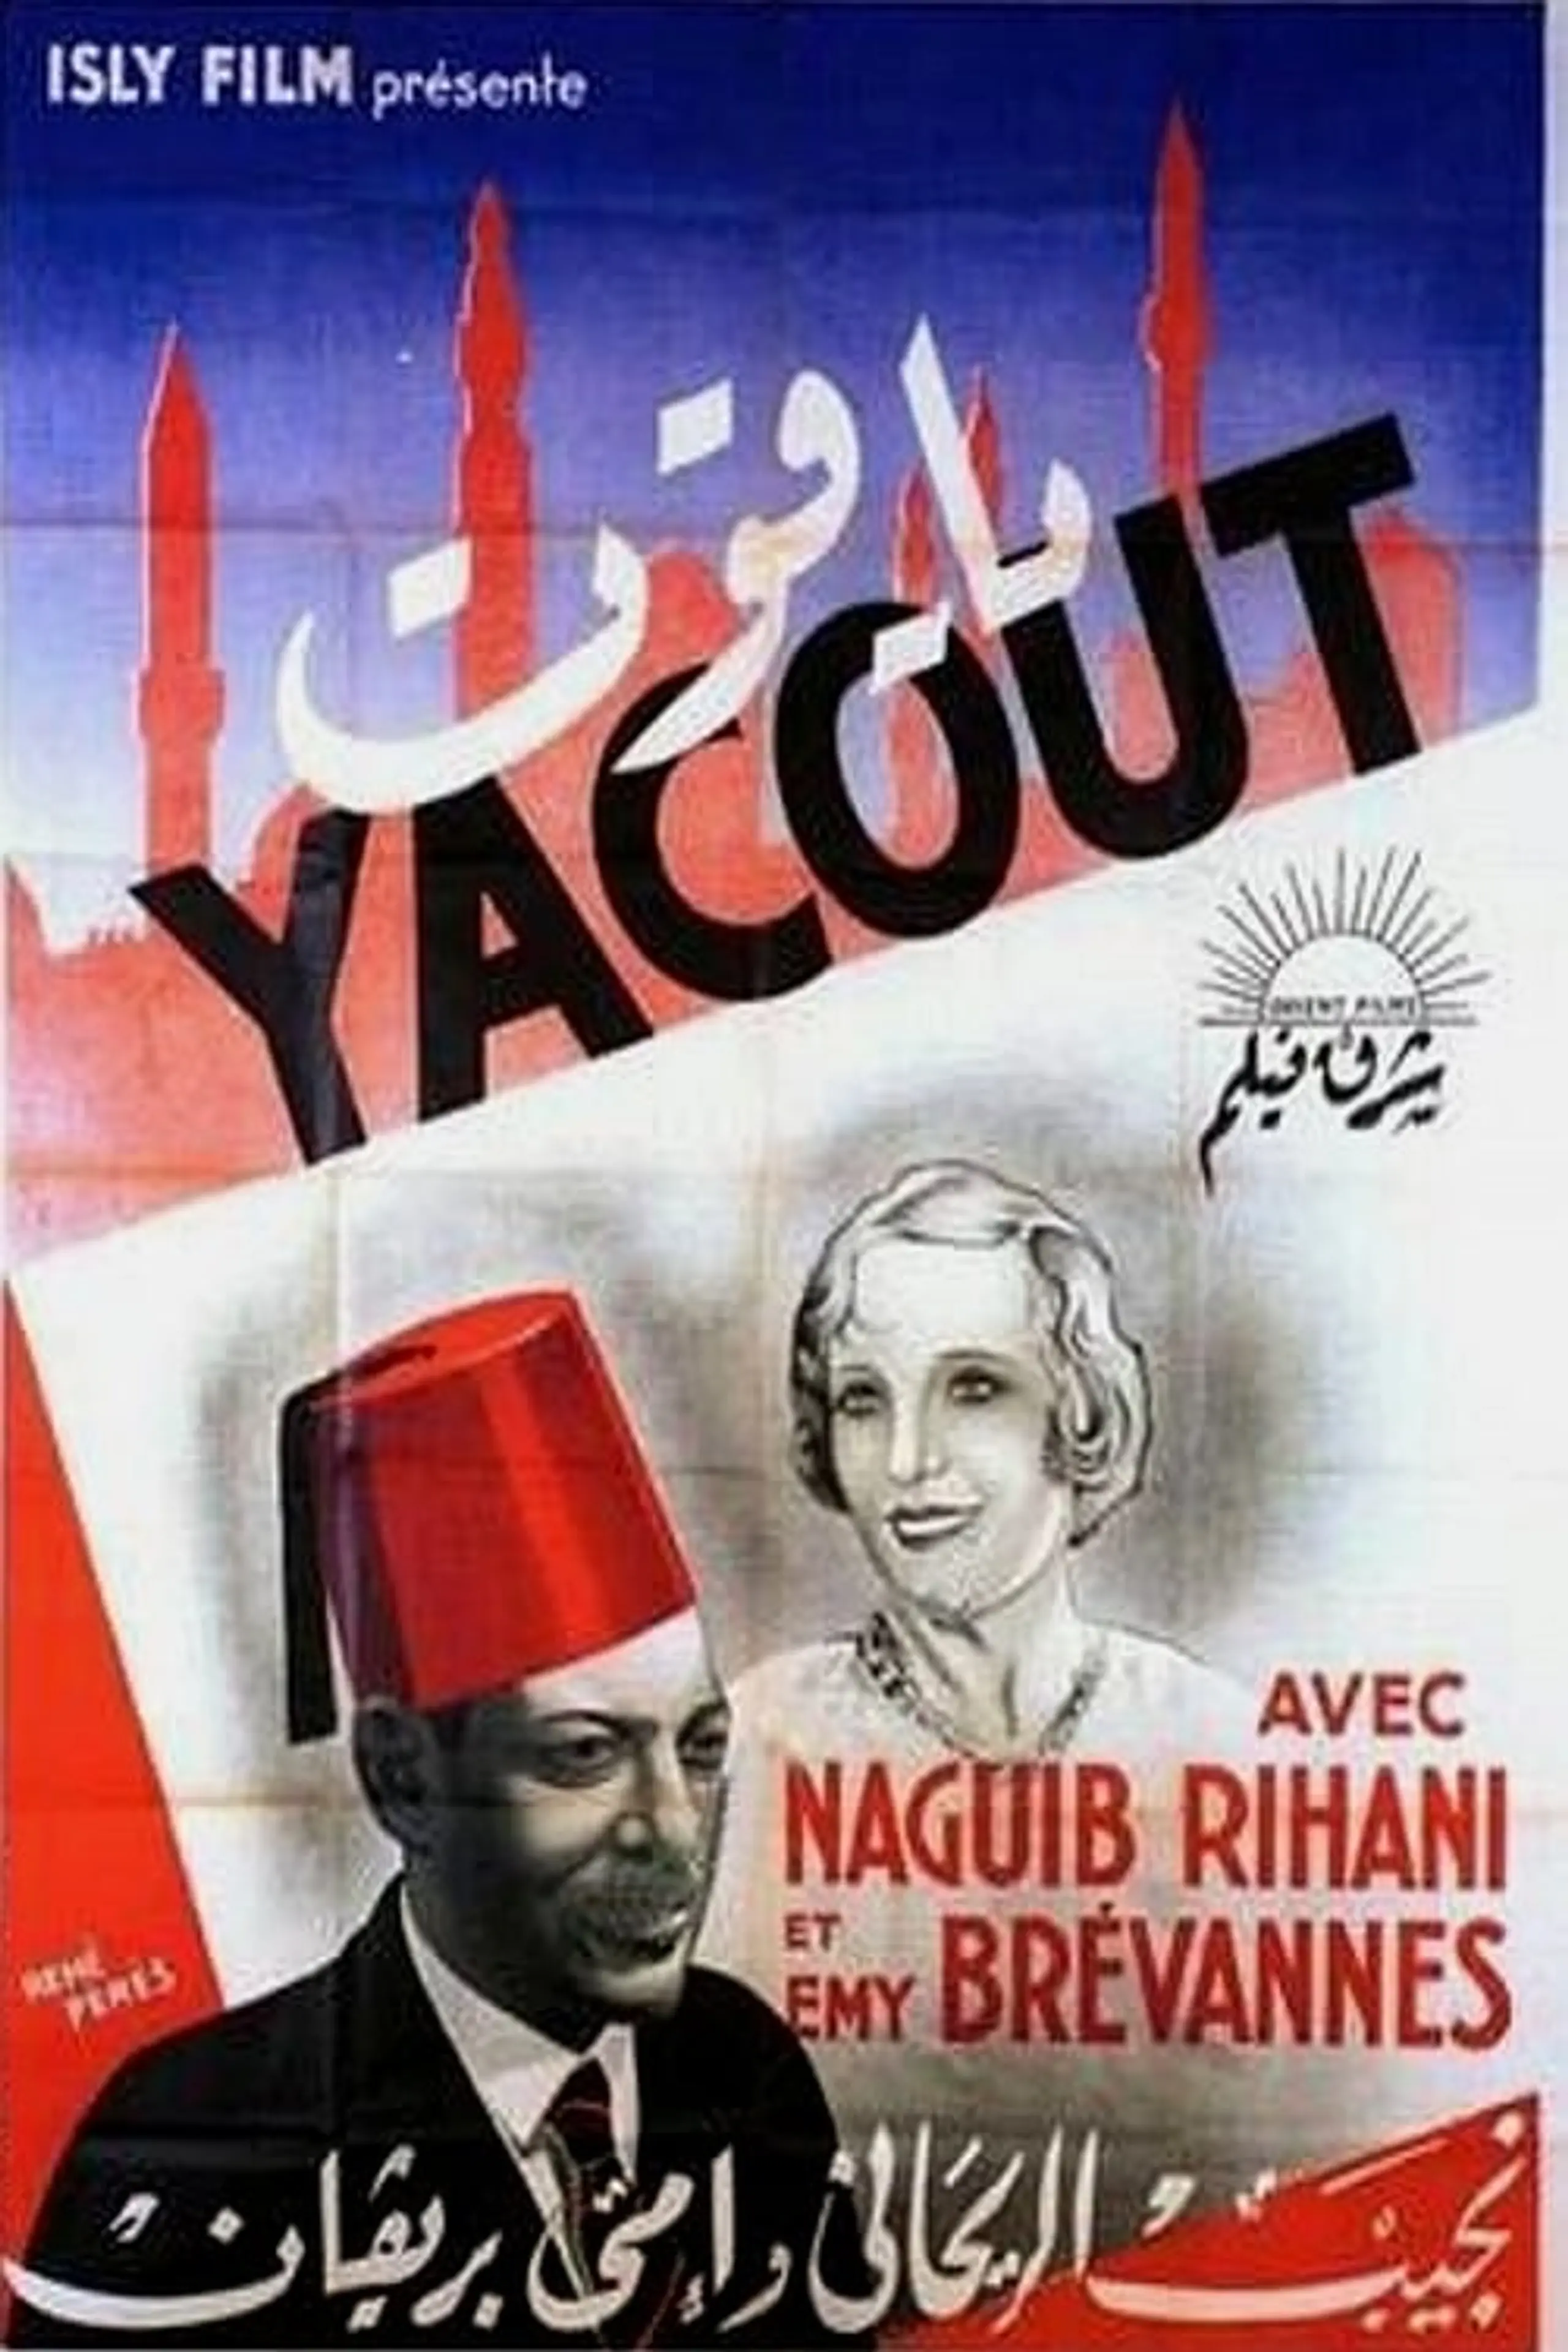 Yacout Effendi